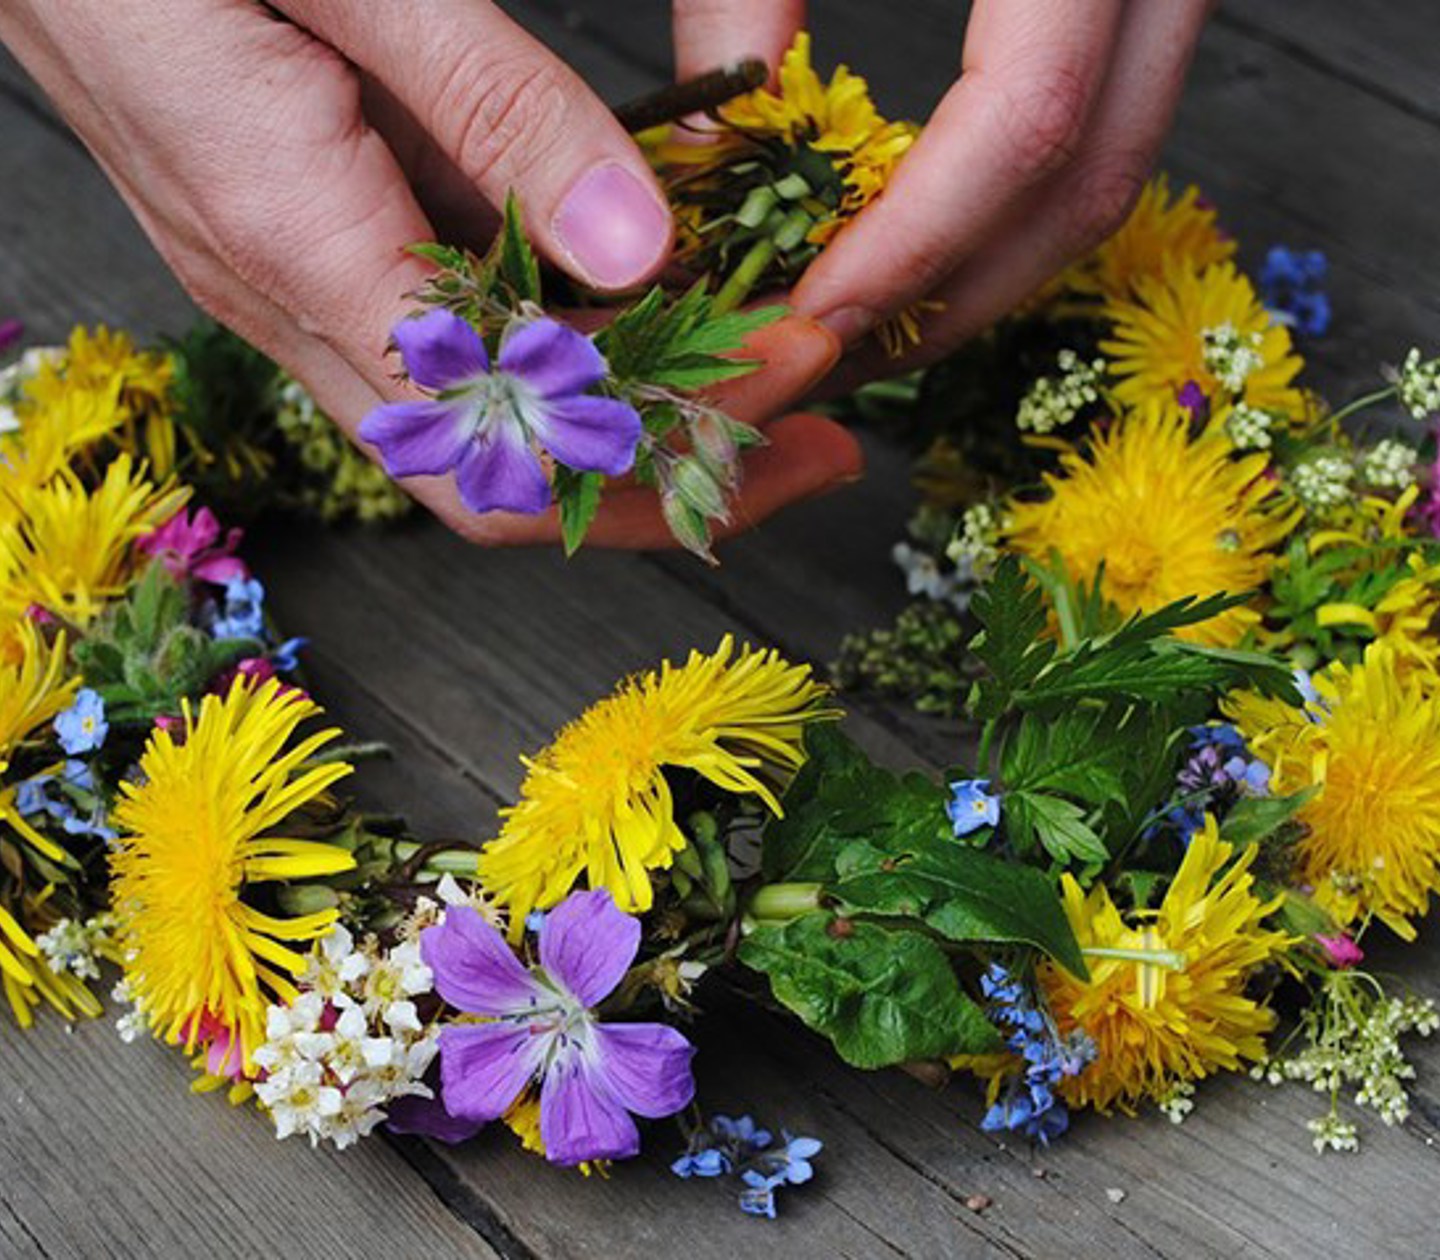 Hands assembling a midsummer wreath